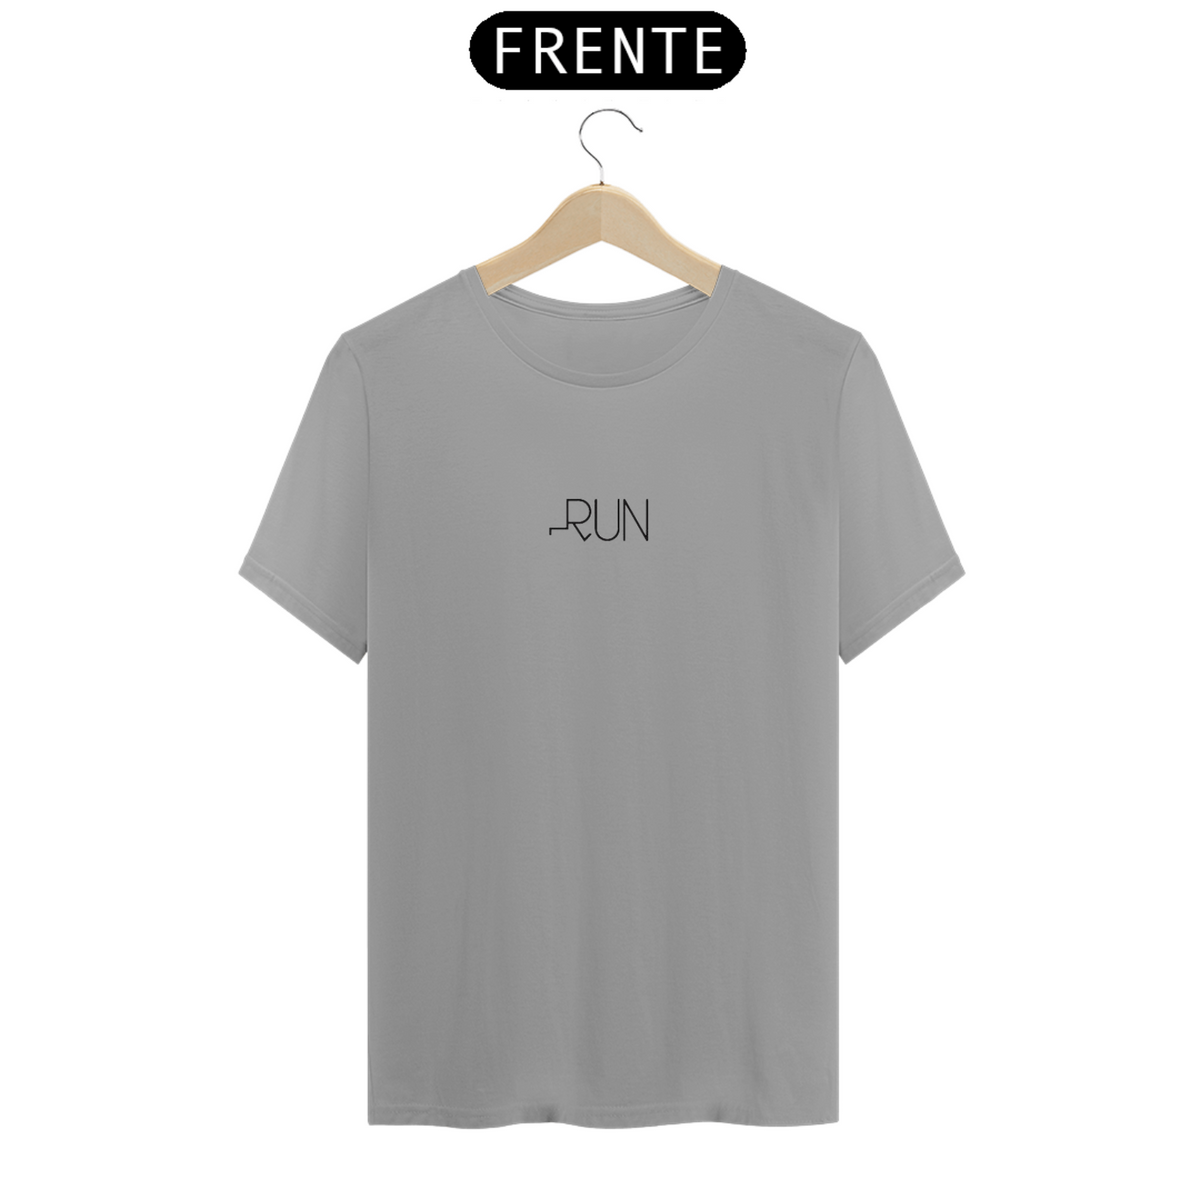 Nome do produto: Camiseta RUN